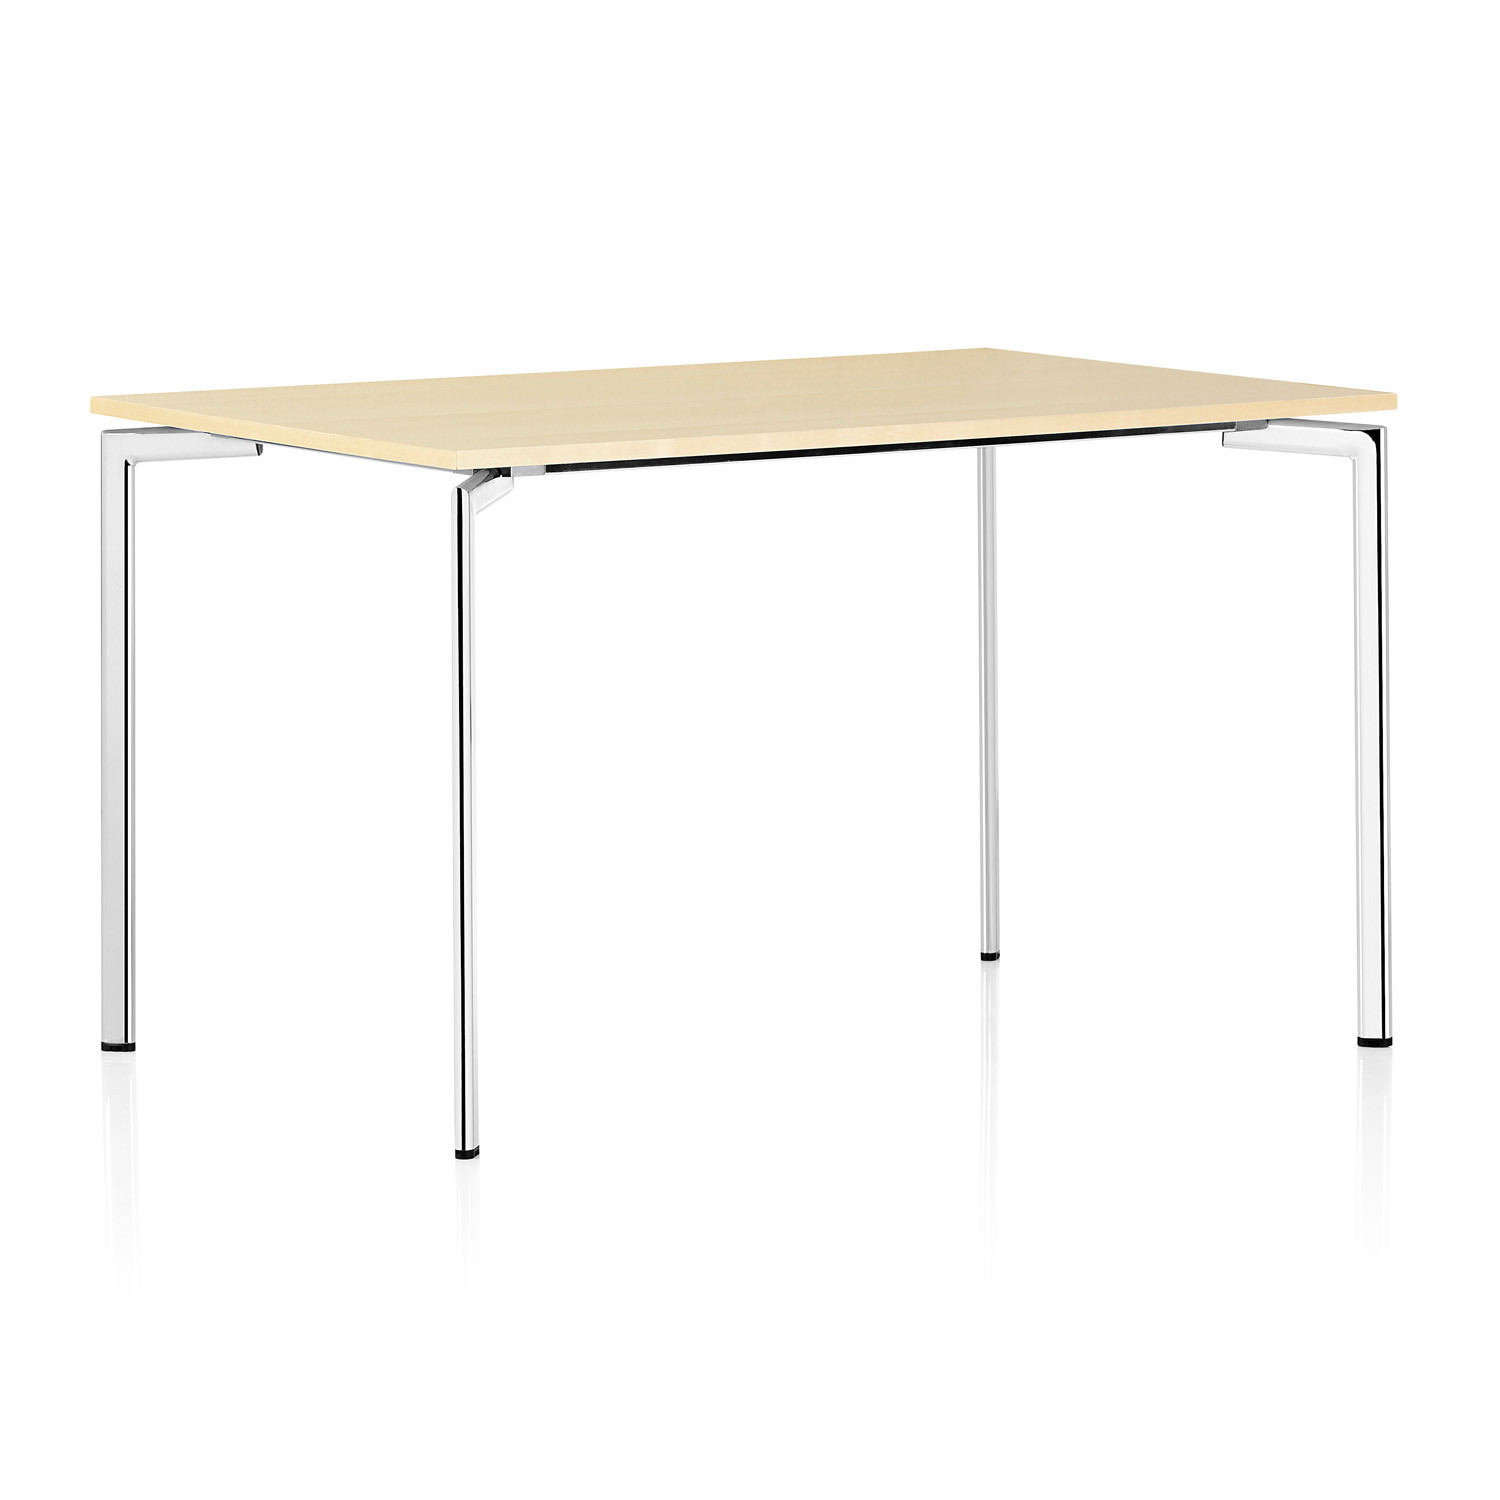 Campus square table